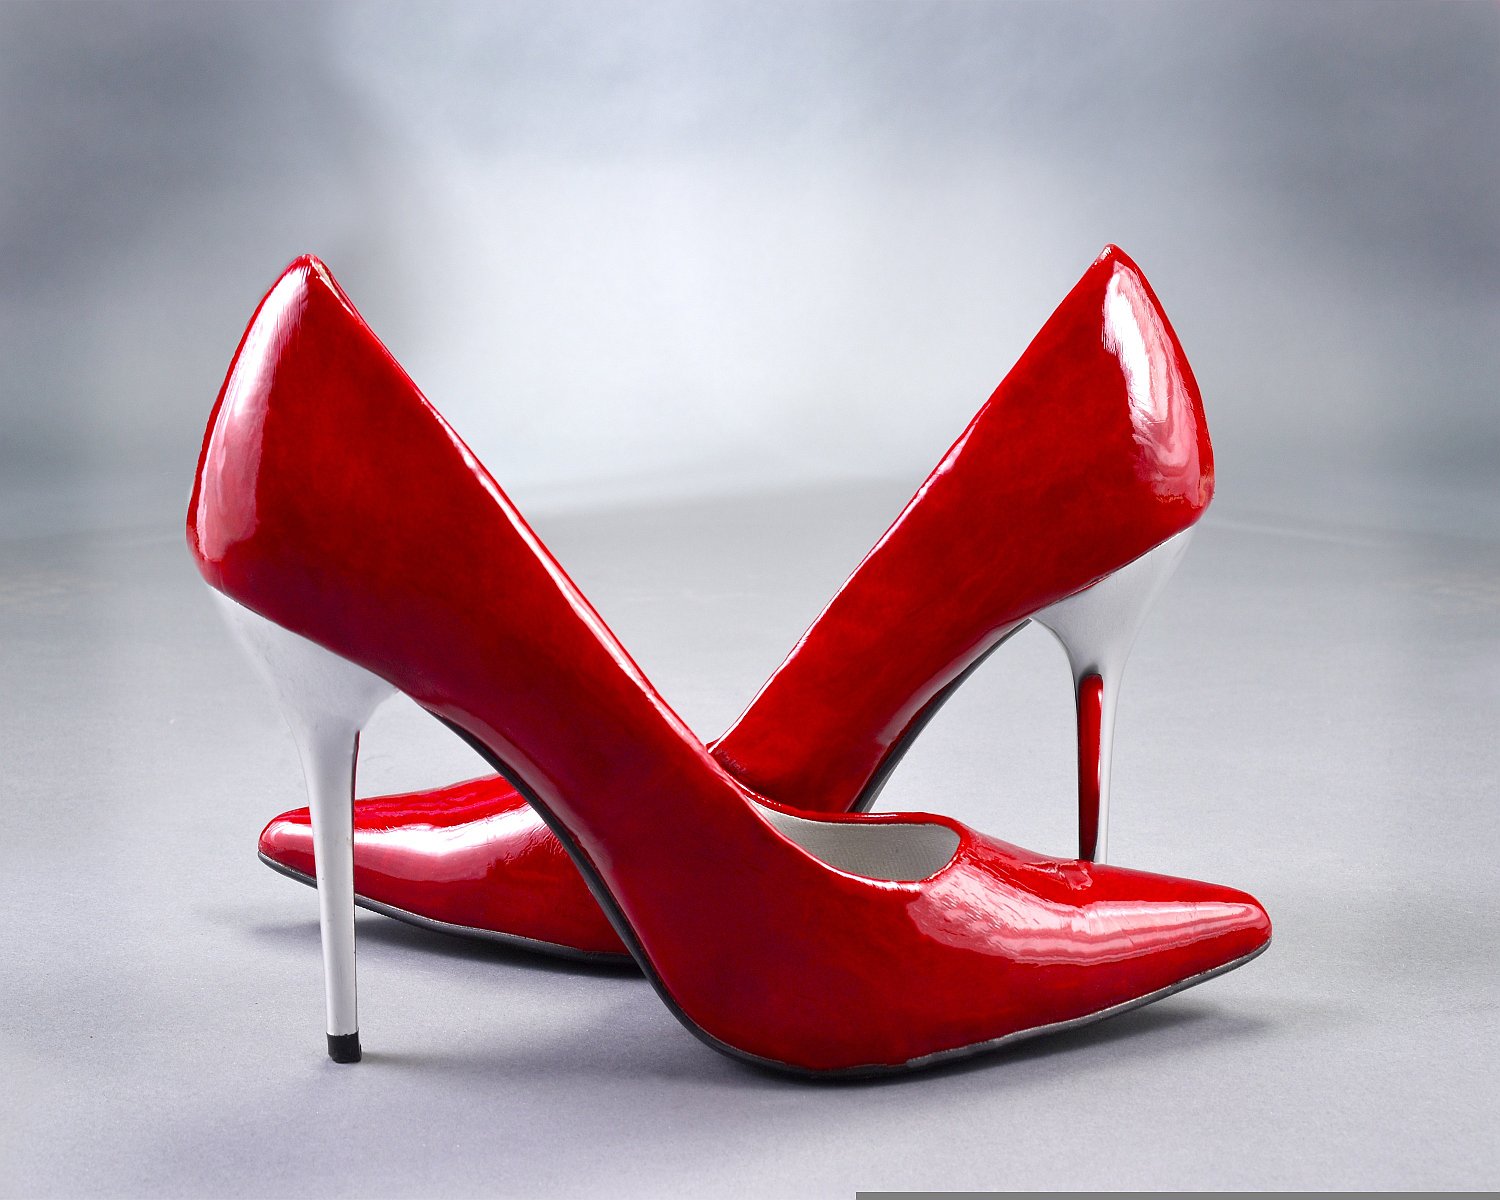 Kobieca szafa pełna jest butów od wysokich szpilek przez wygodne pantofle na sportowych butach kończąc